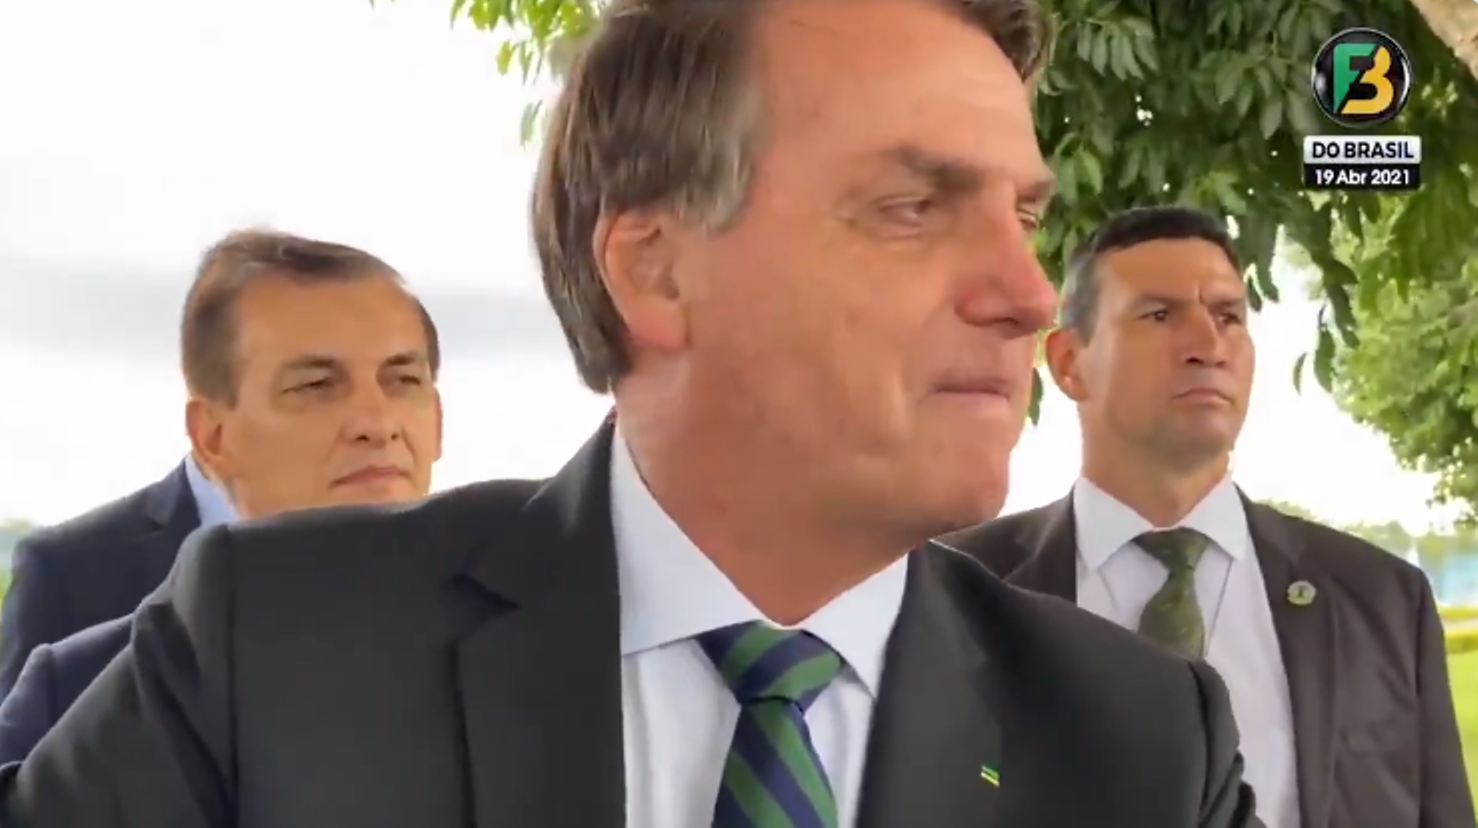 Não se sabe se Bolsonaro criticou Jesus Cristo ou se elogiou o PT